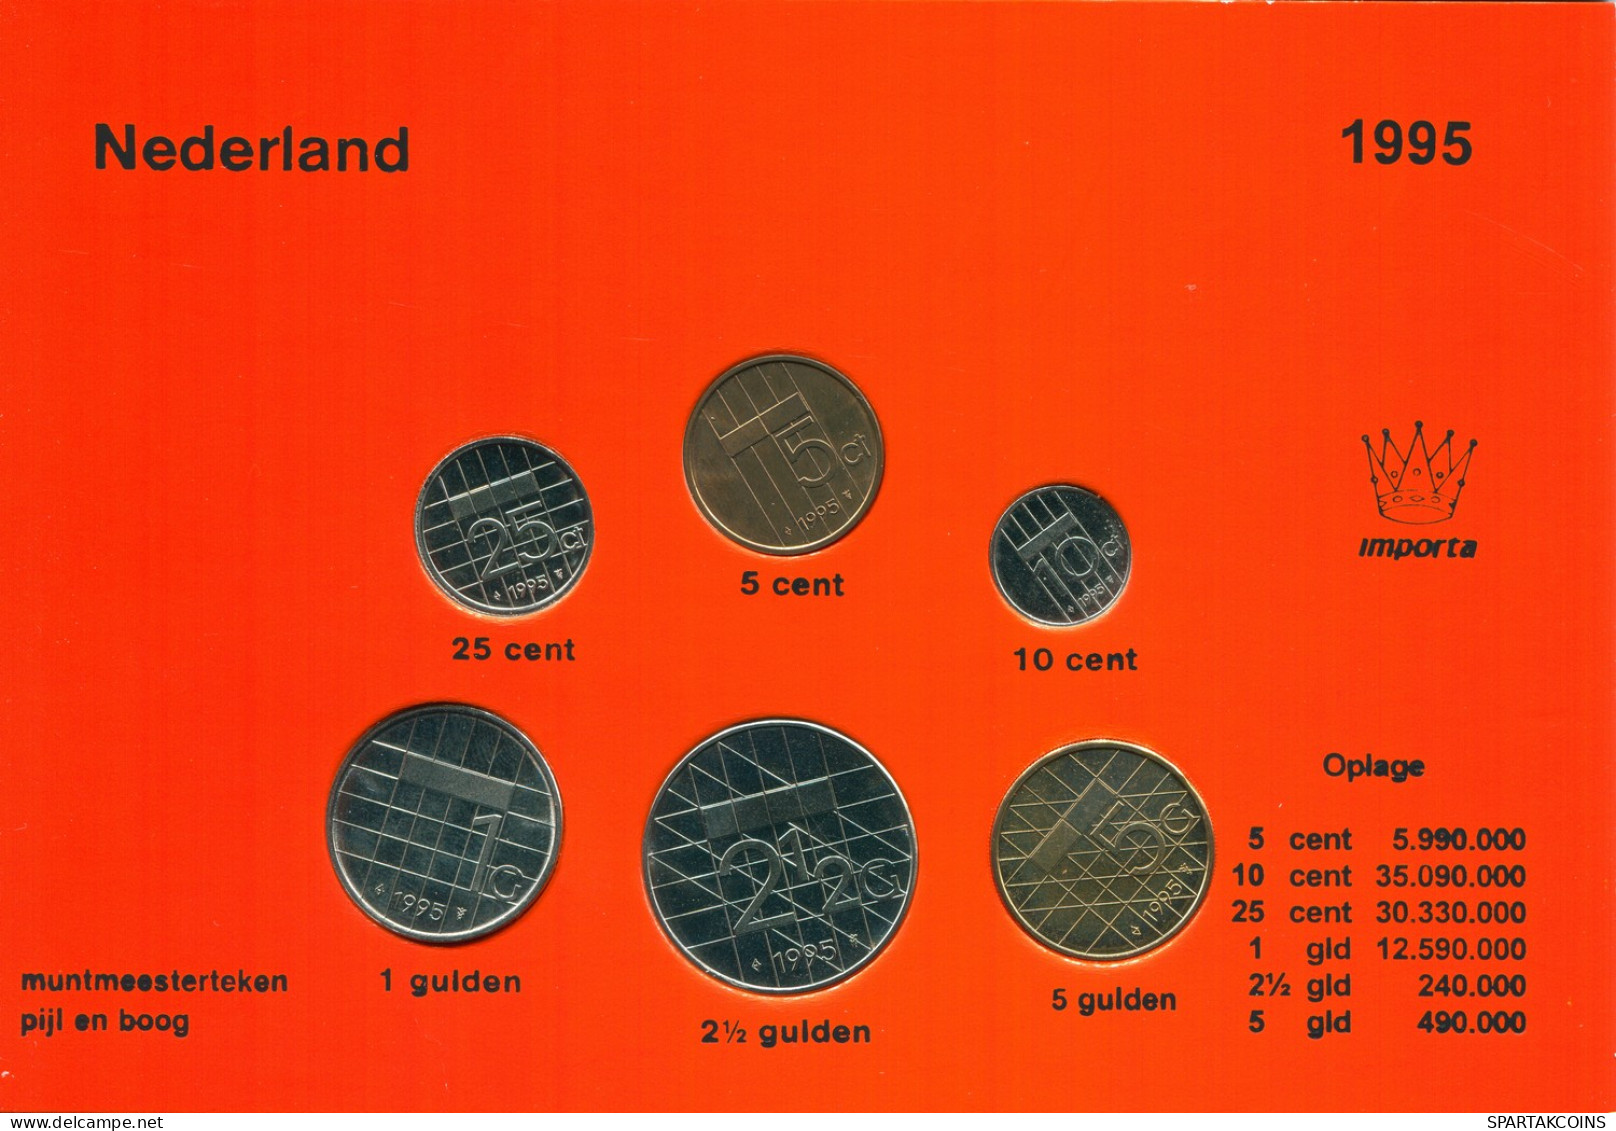 NETHERLANDS 1995 MINT SET 6 Coin #SET1032.7.U - Mint Sets & Proof Sets